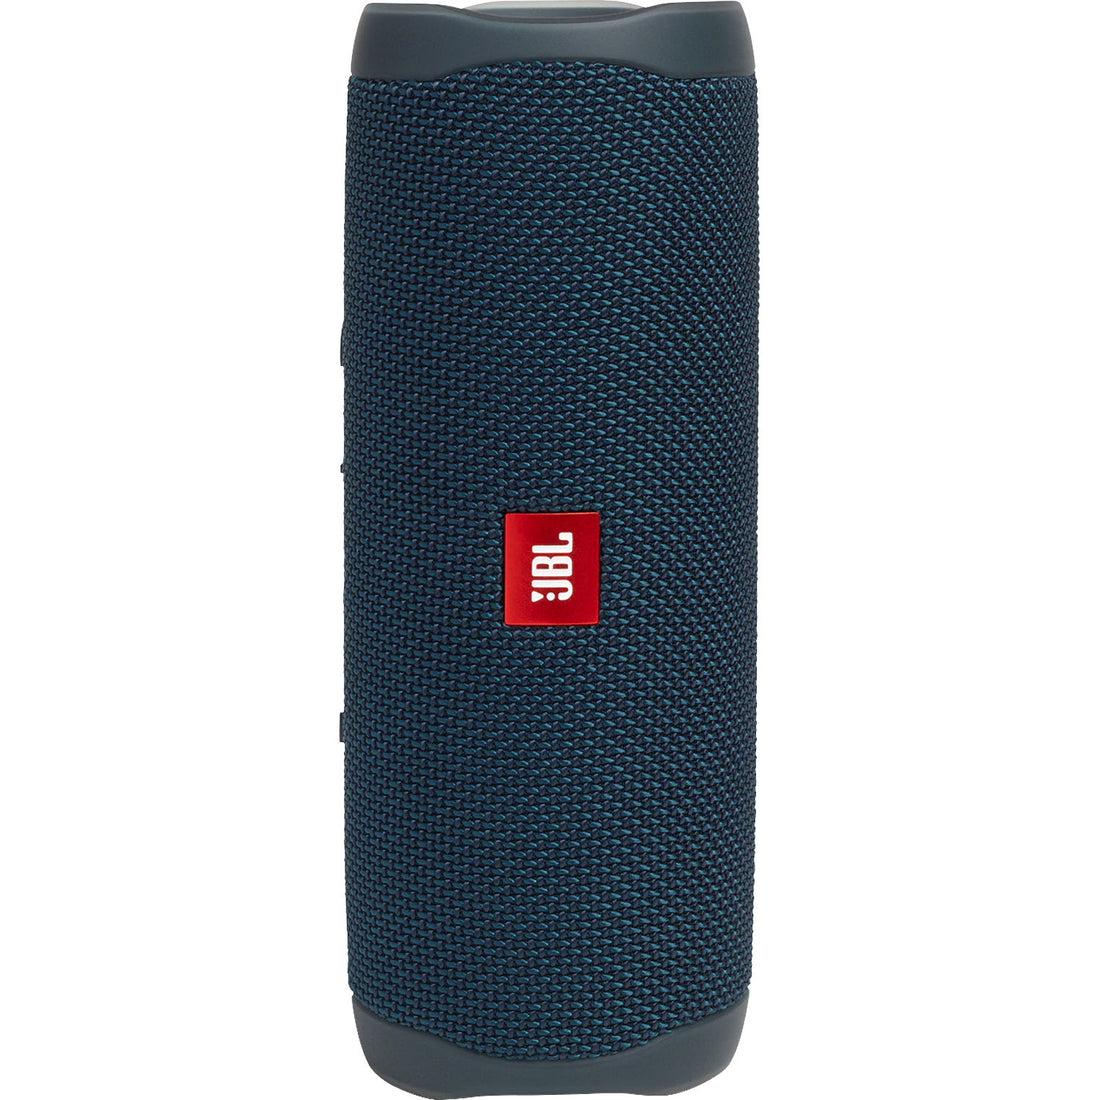 JBL Flip 5 Waterproof Wireless Portable Bluetooth Speaker - GG - Blue (Refurbished)